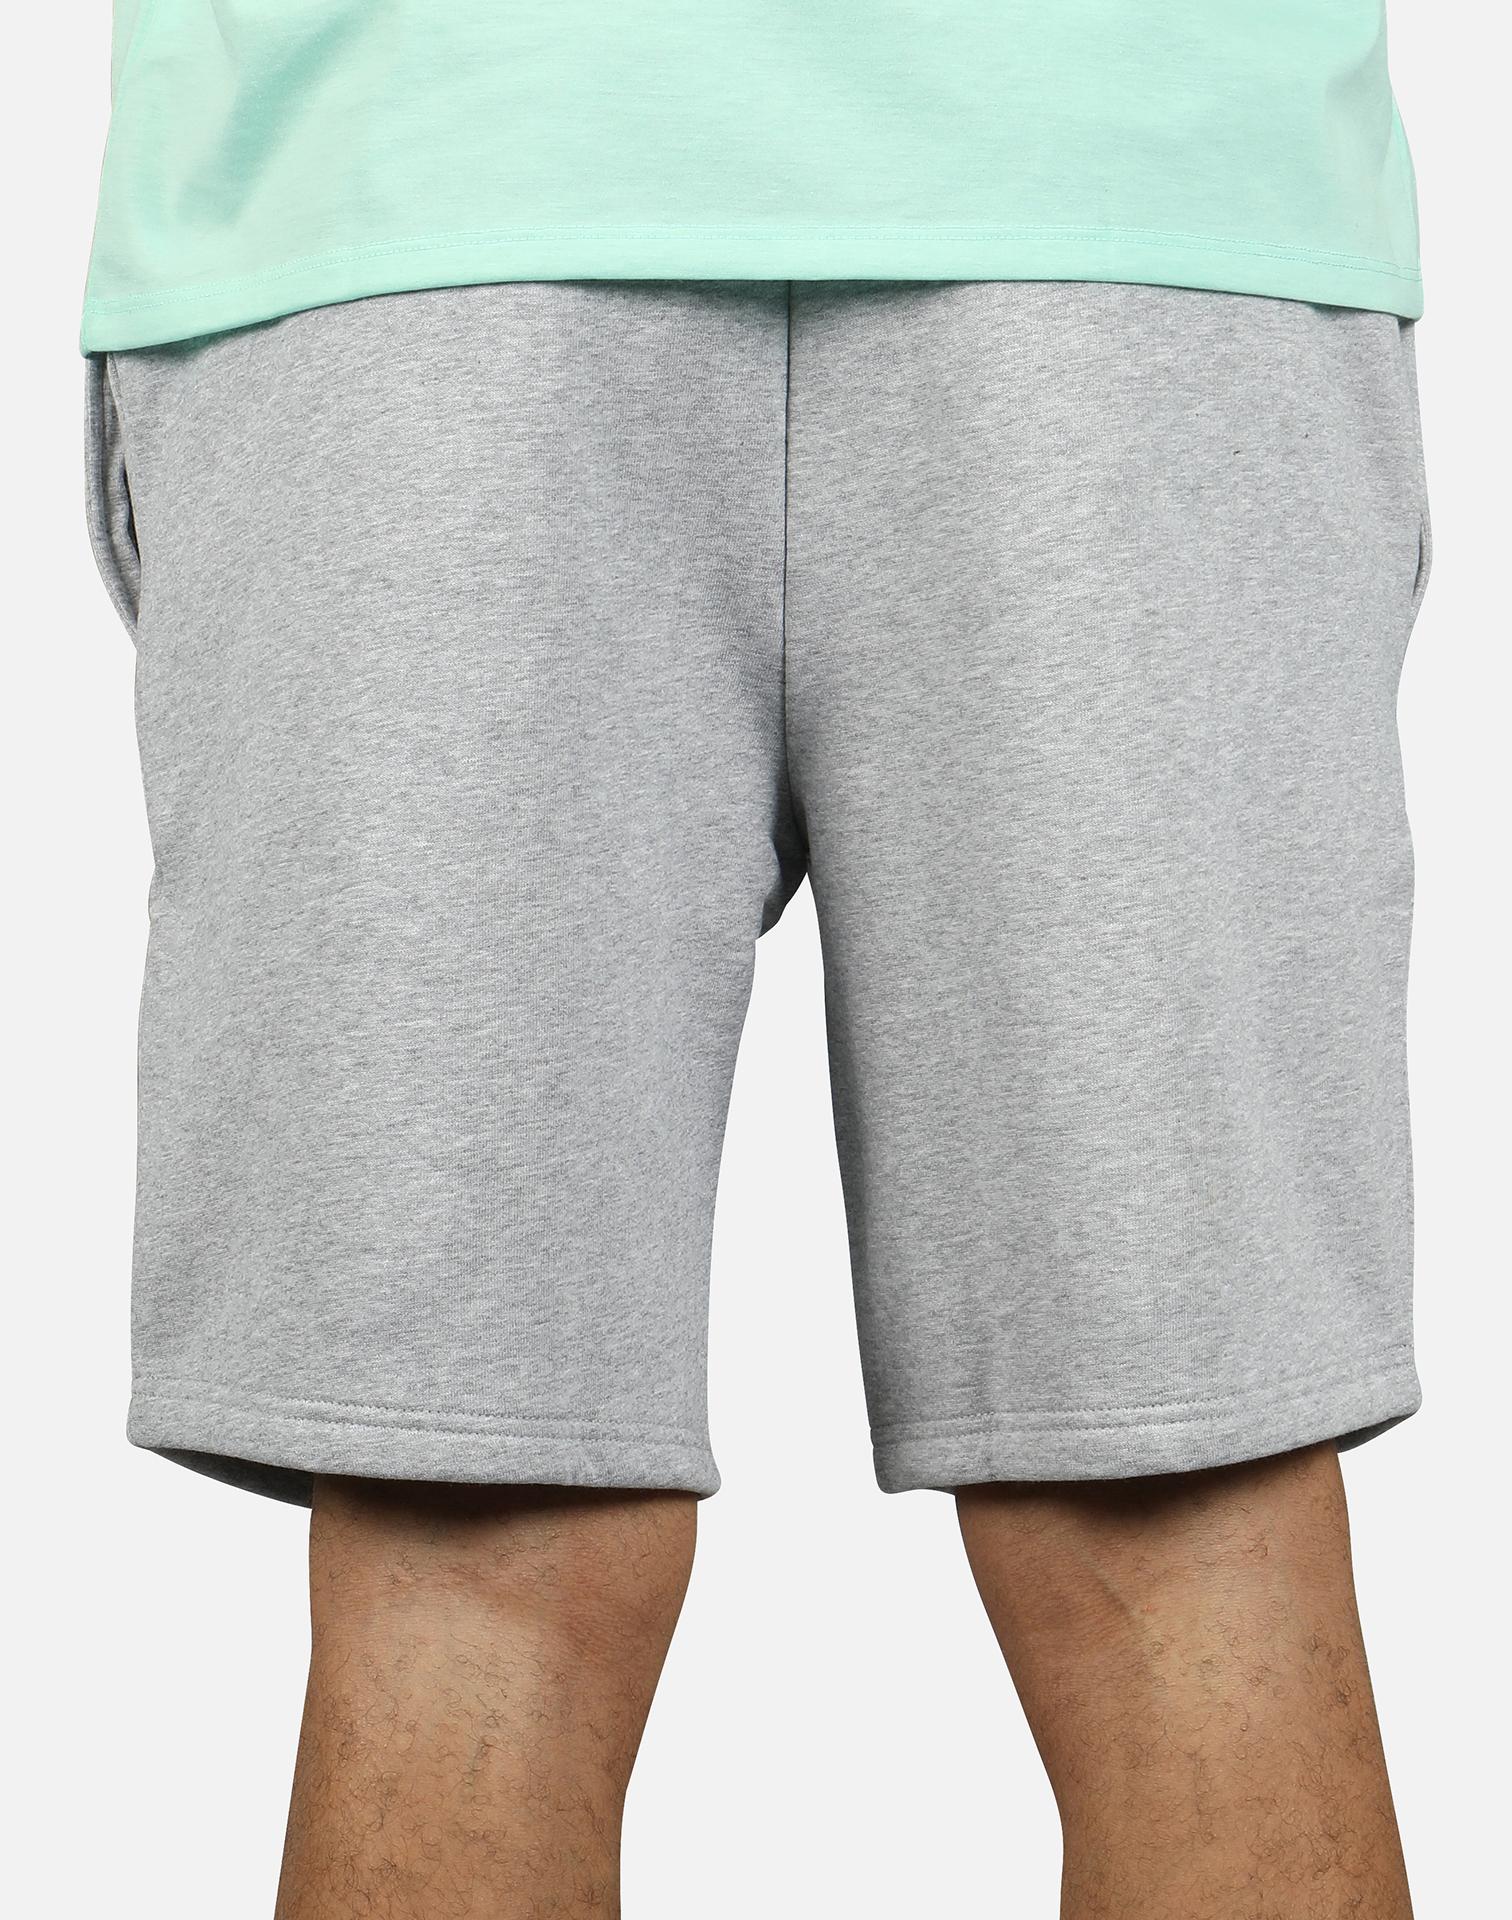 Lacoste Sport Tennis Fleece Shorts in Heather Grey (Gray) for Men - Lyst